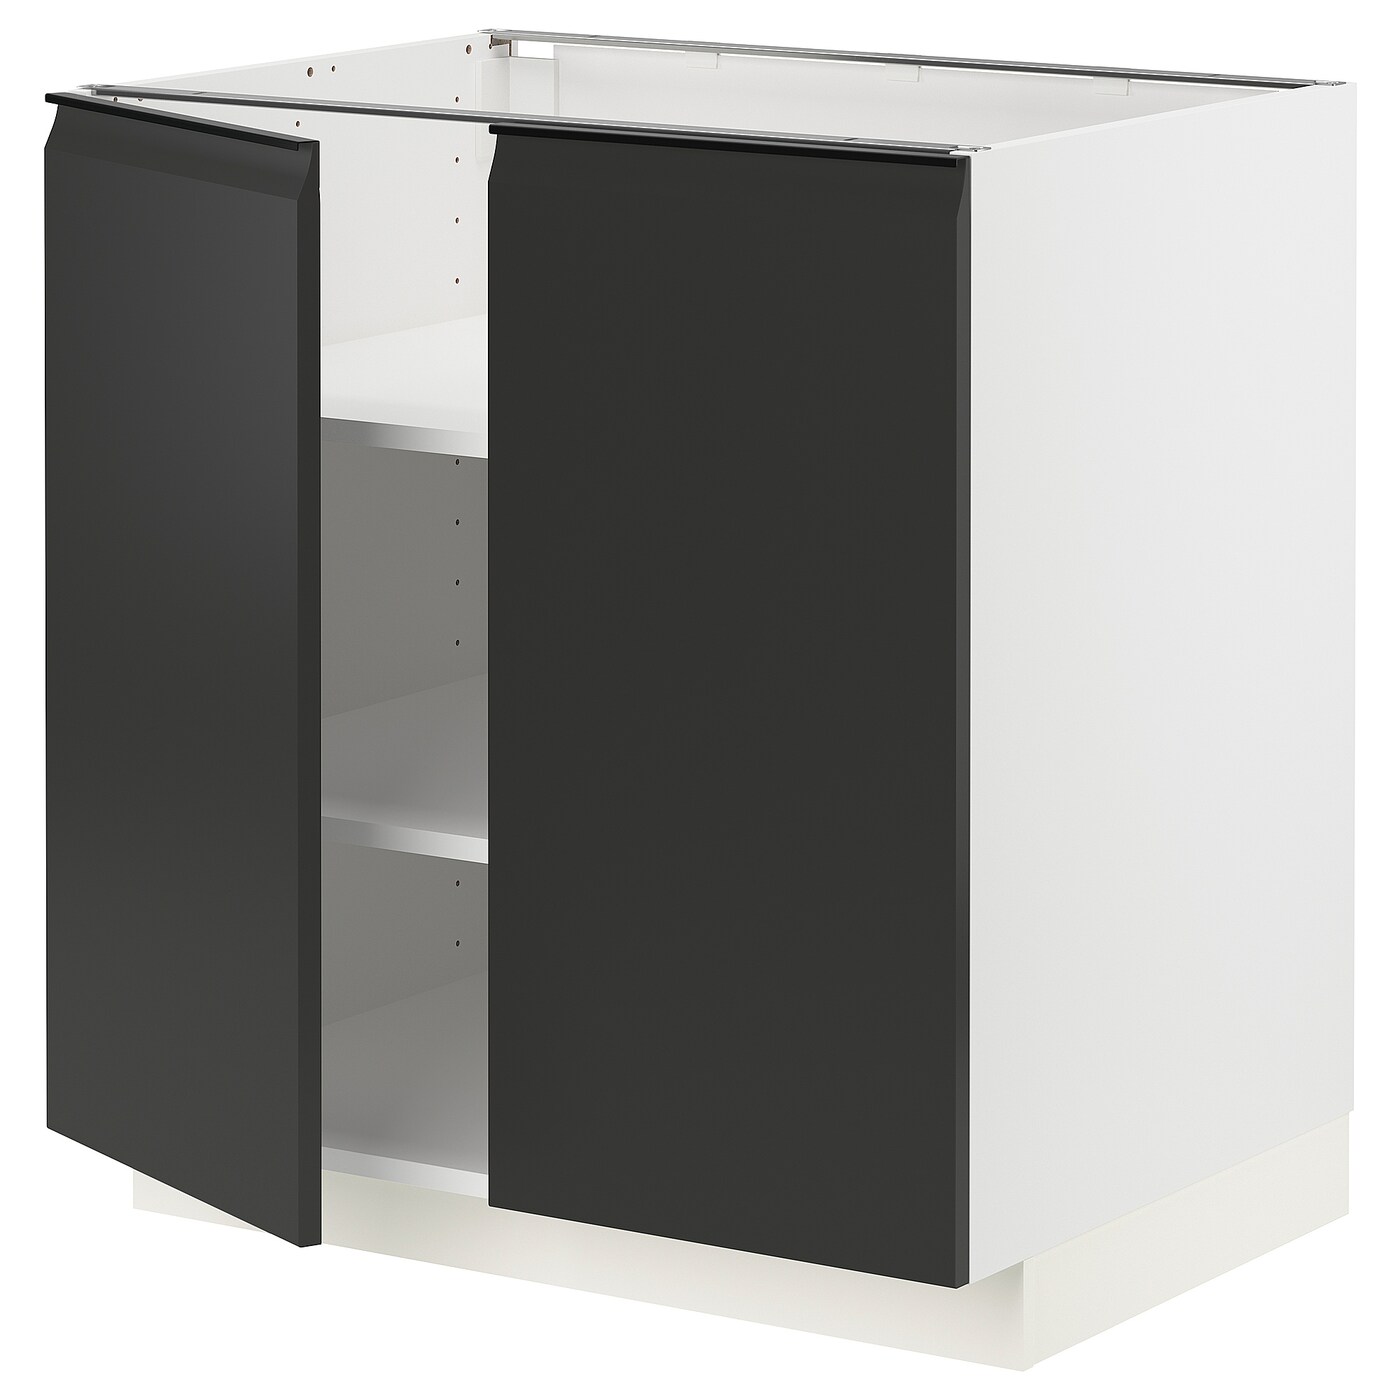 Напольный кухонный шкаф  - IKEA METOD, 88x62x80см, белый/черный, МЕТОД ИКЕА